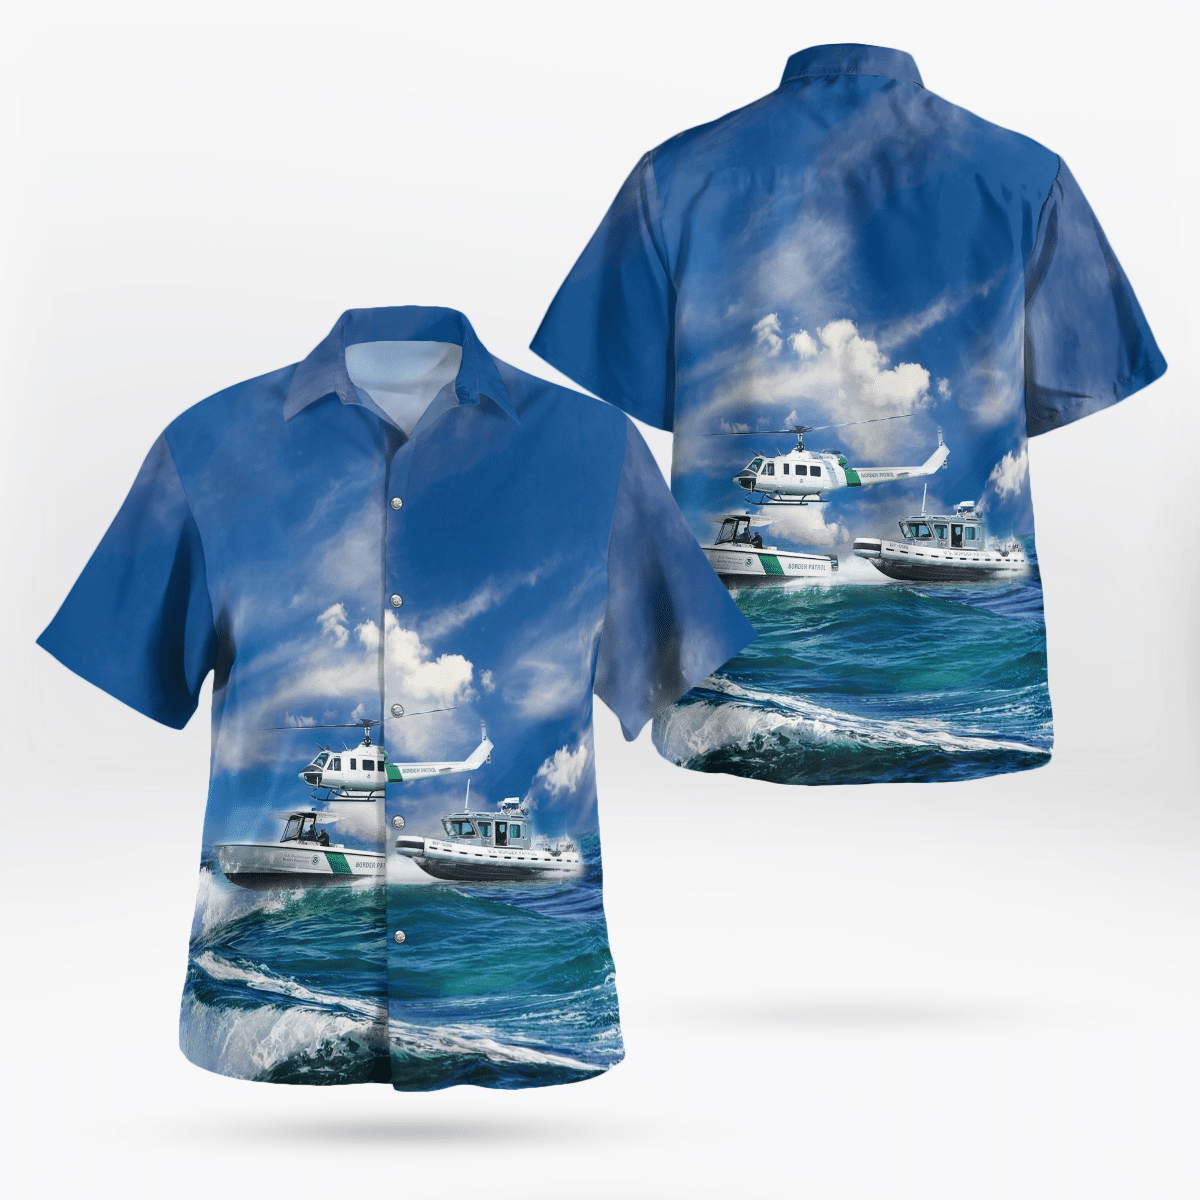 Latest Hawaiian beach fashion 199